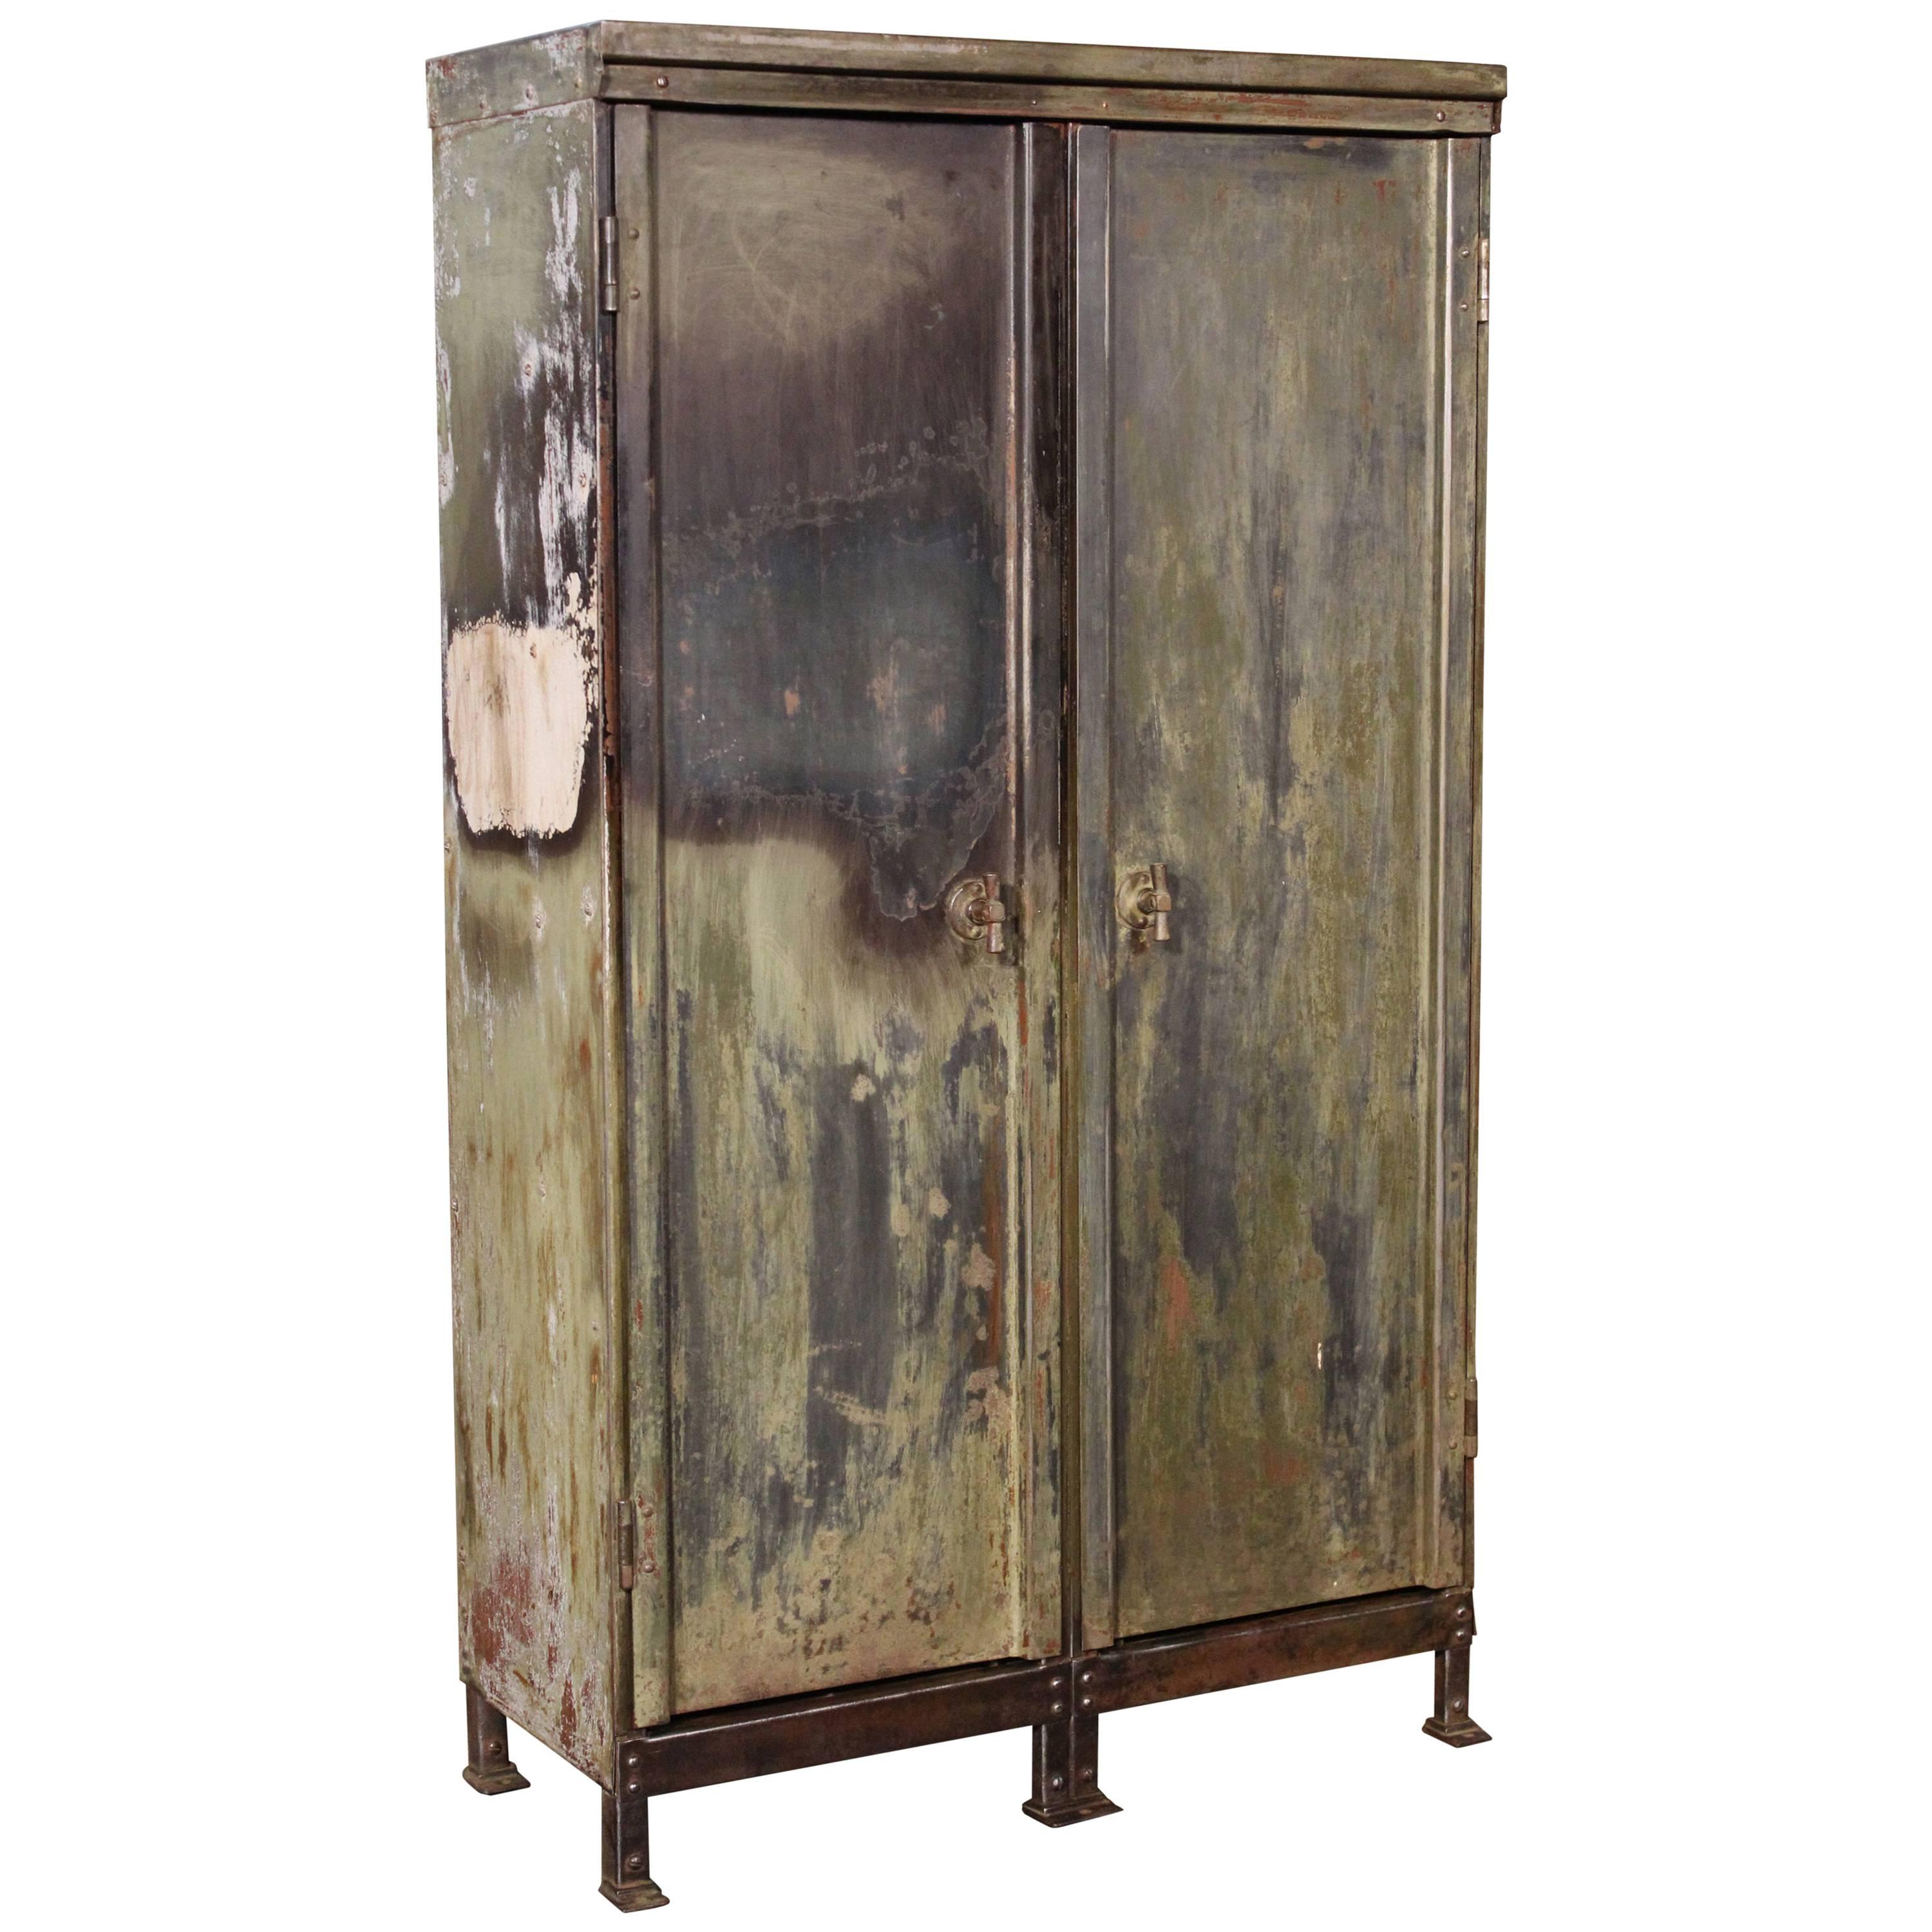 Vintage Distressed Painted Metal Storage Cabinet Locker